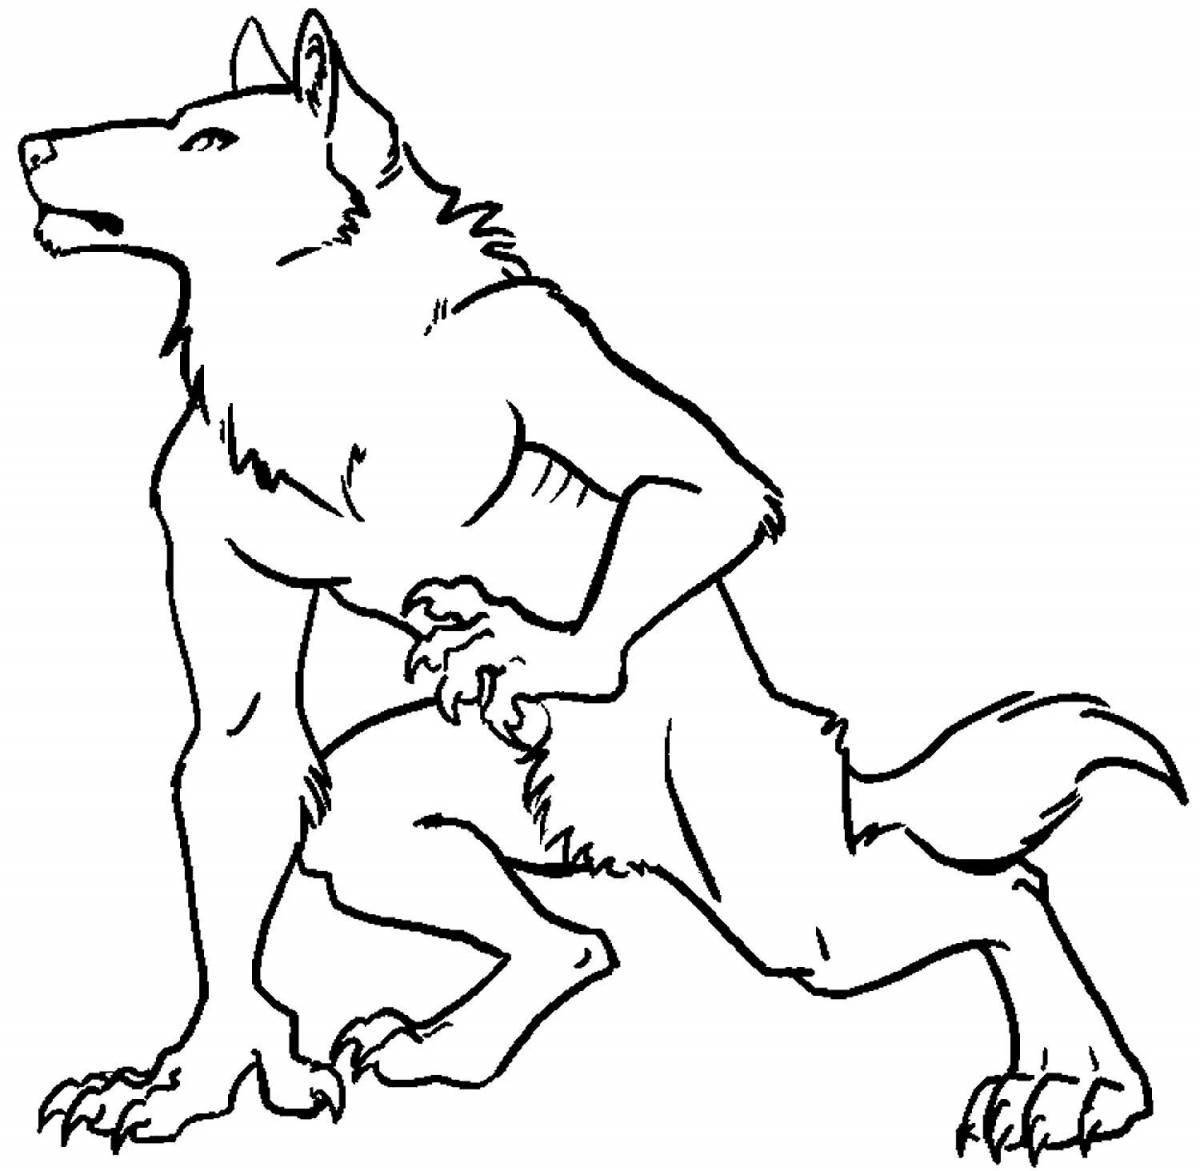 Werewolf #4